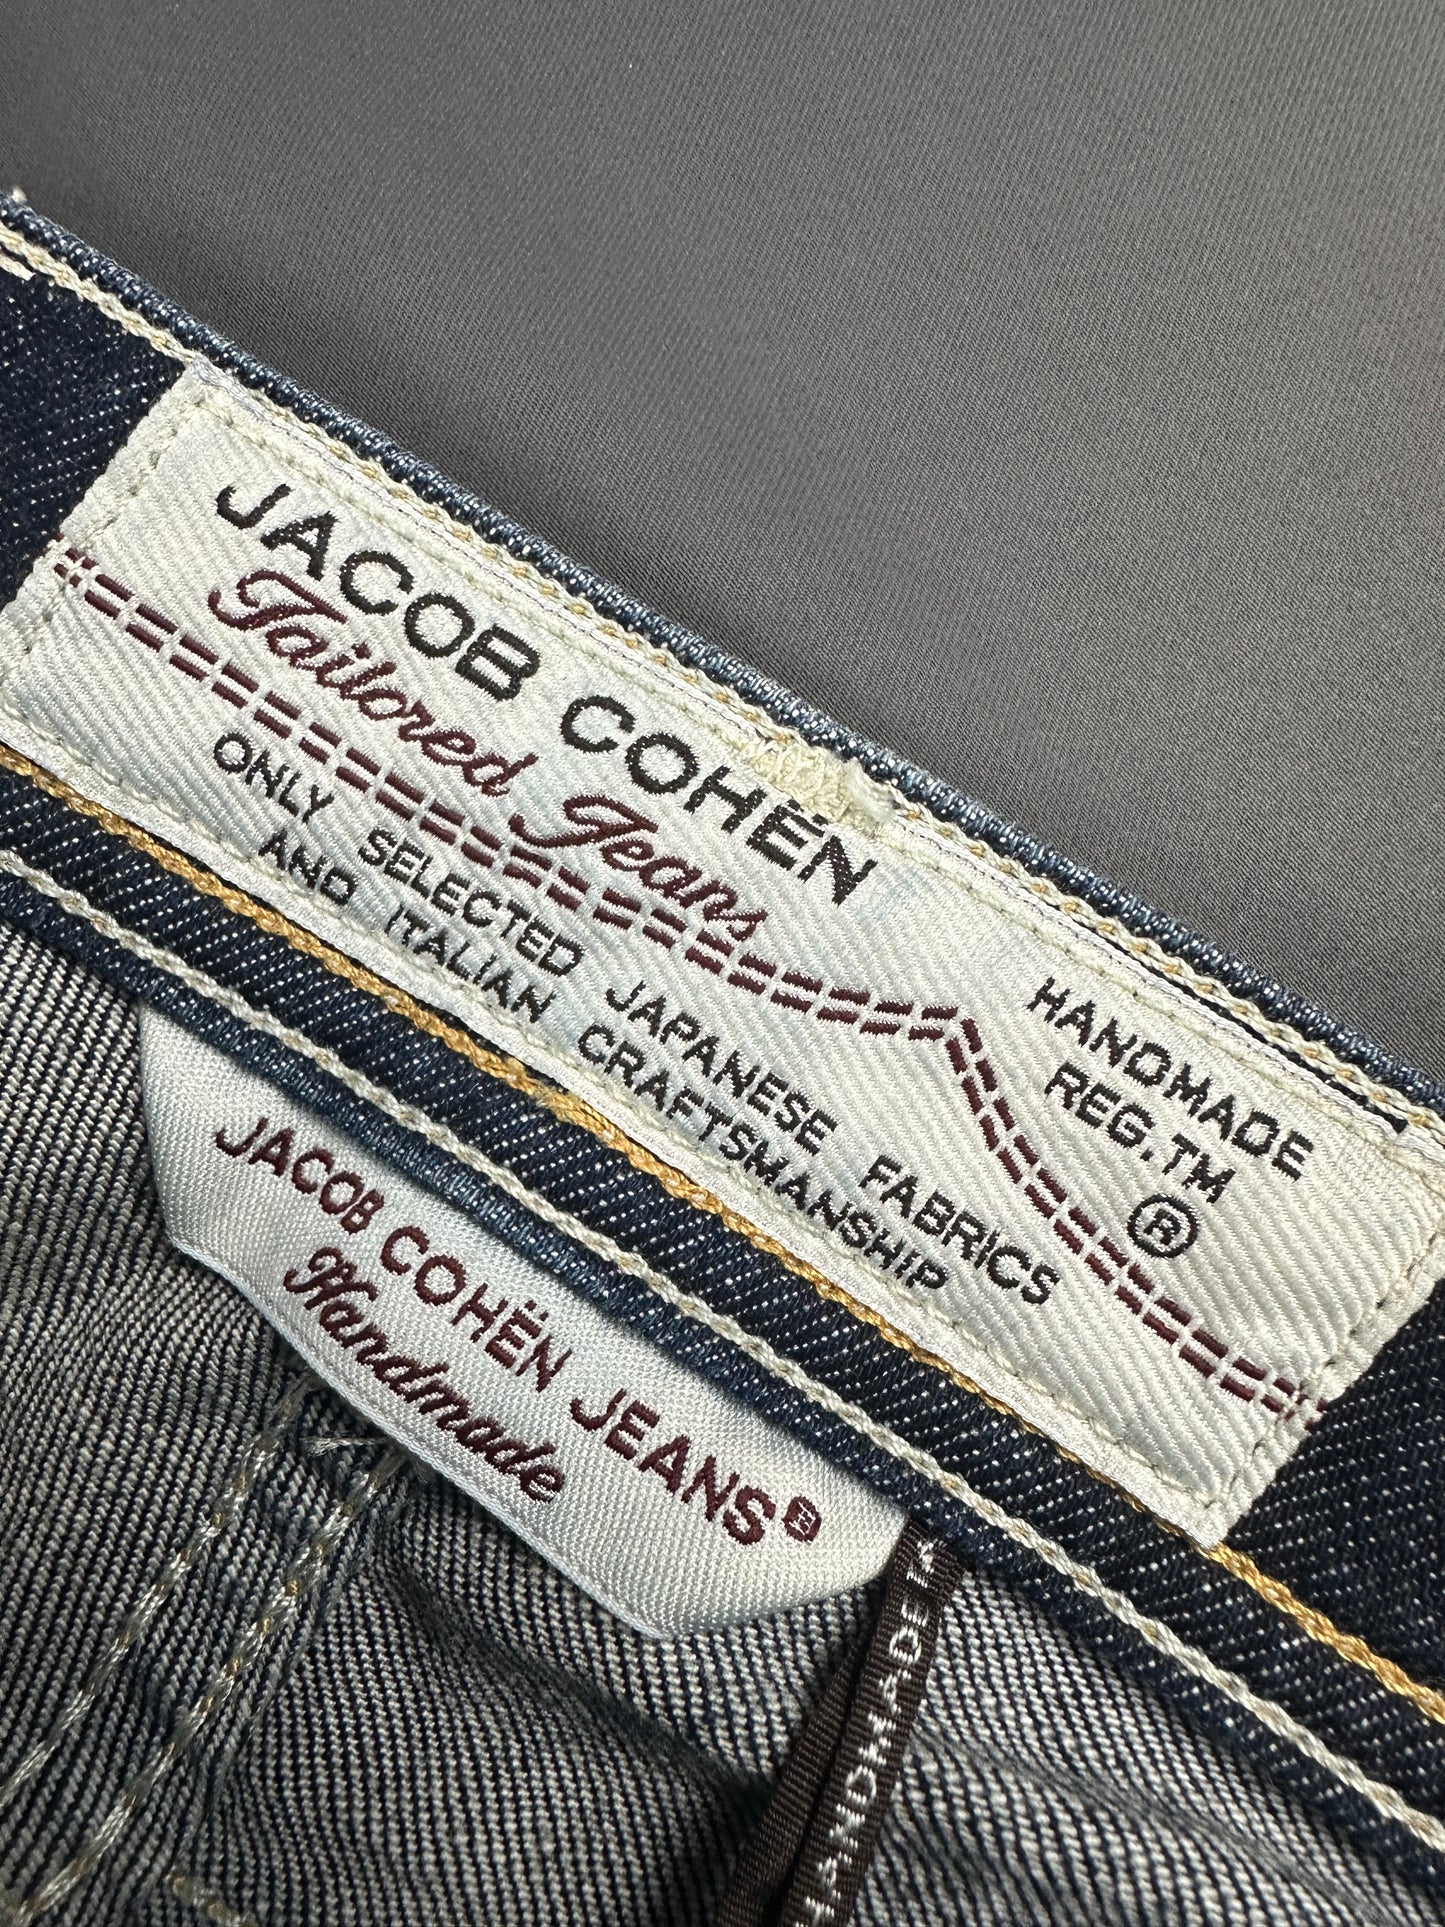 Vintage Jacob Cohen Jeans 33